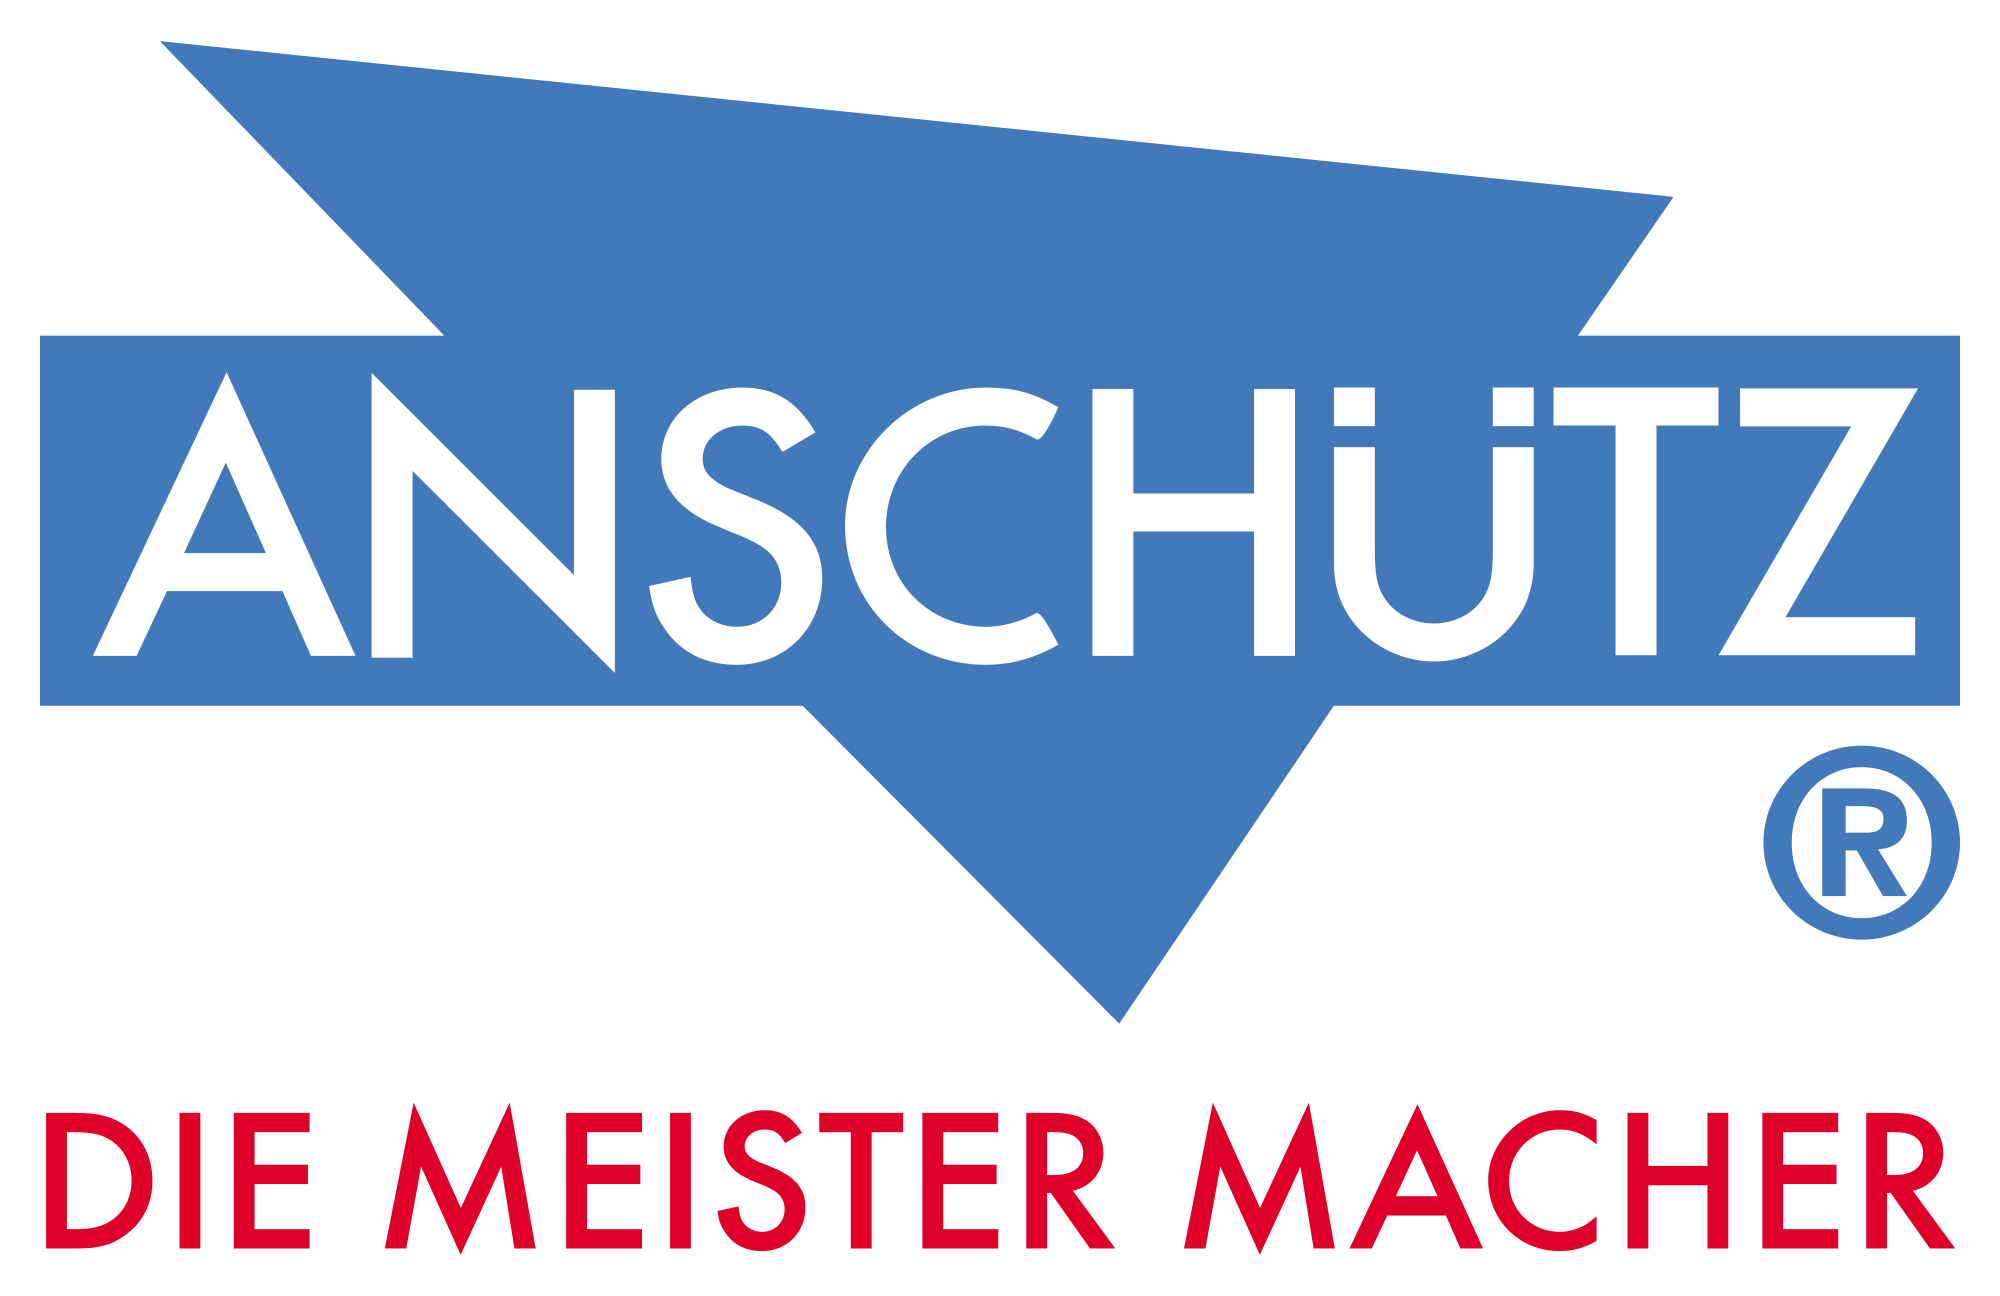 Anschutz Logo - Anschuetz logo.svg